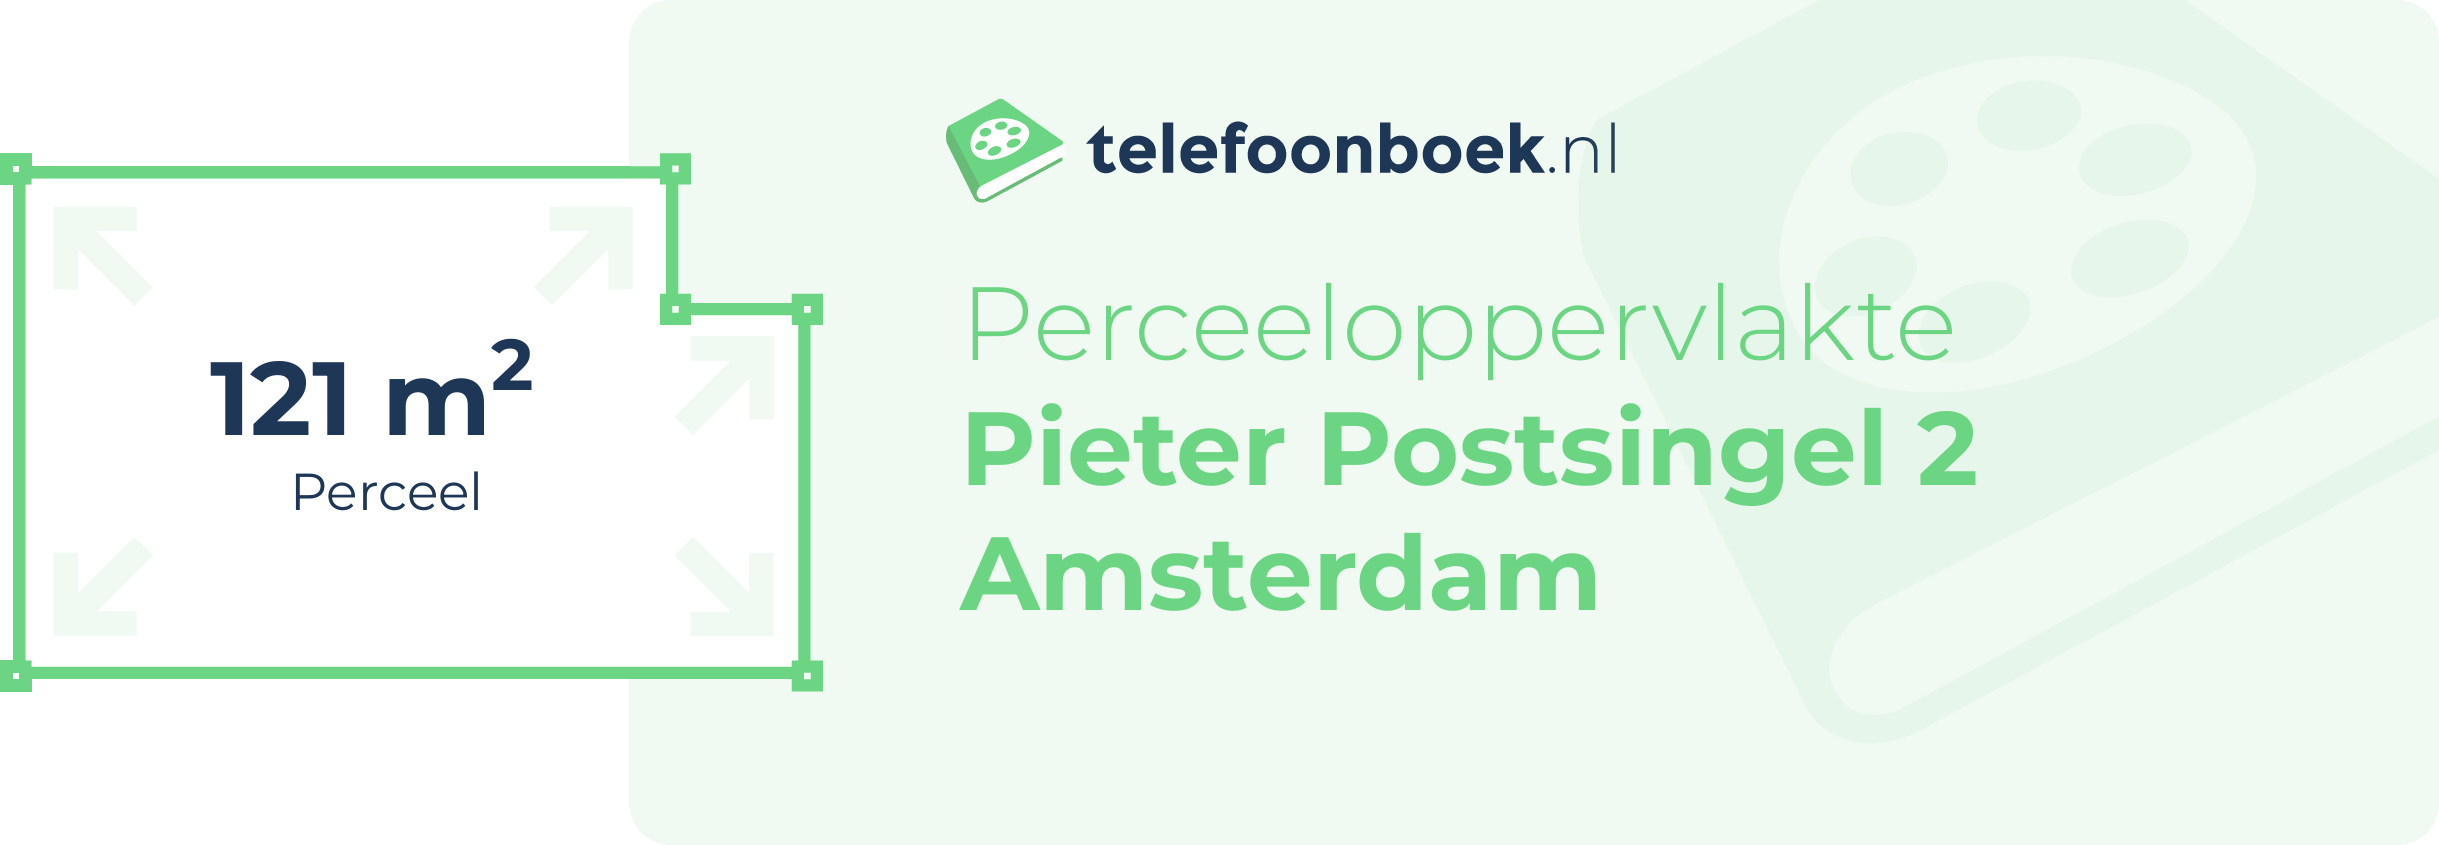 Perceeloppervlakte Pieter Postsingel 2 Amsterdam